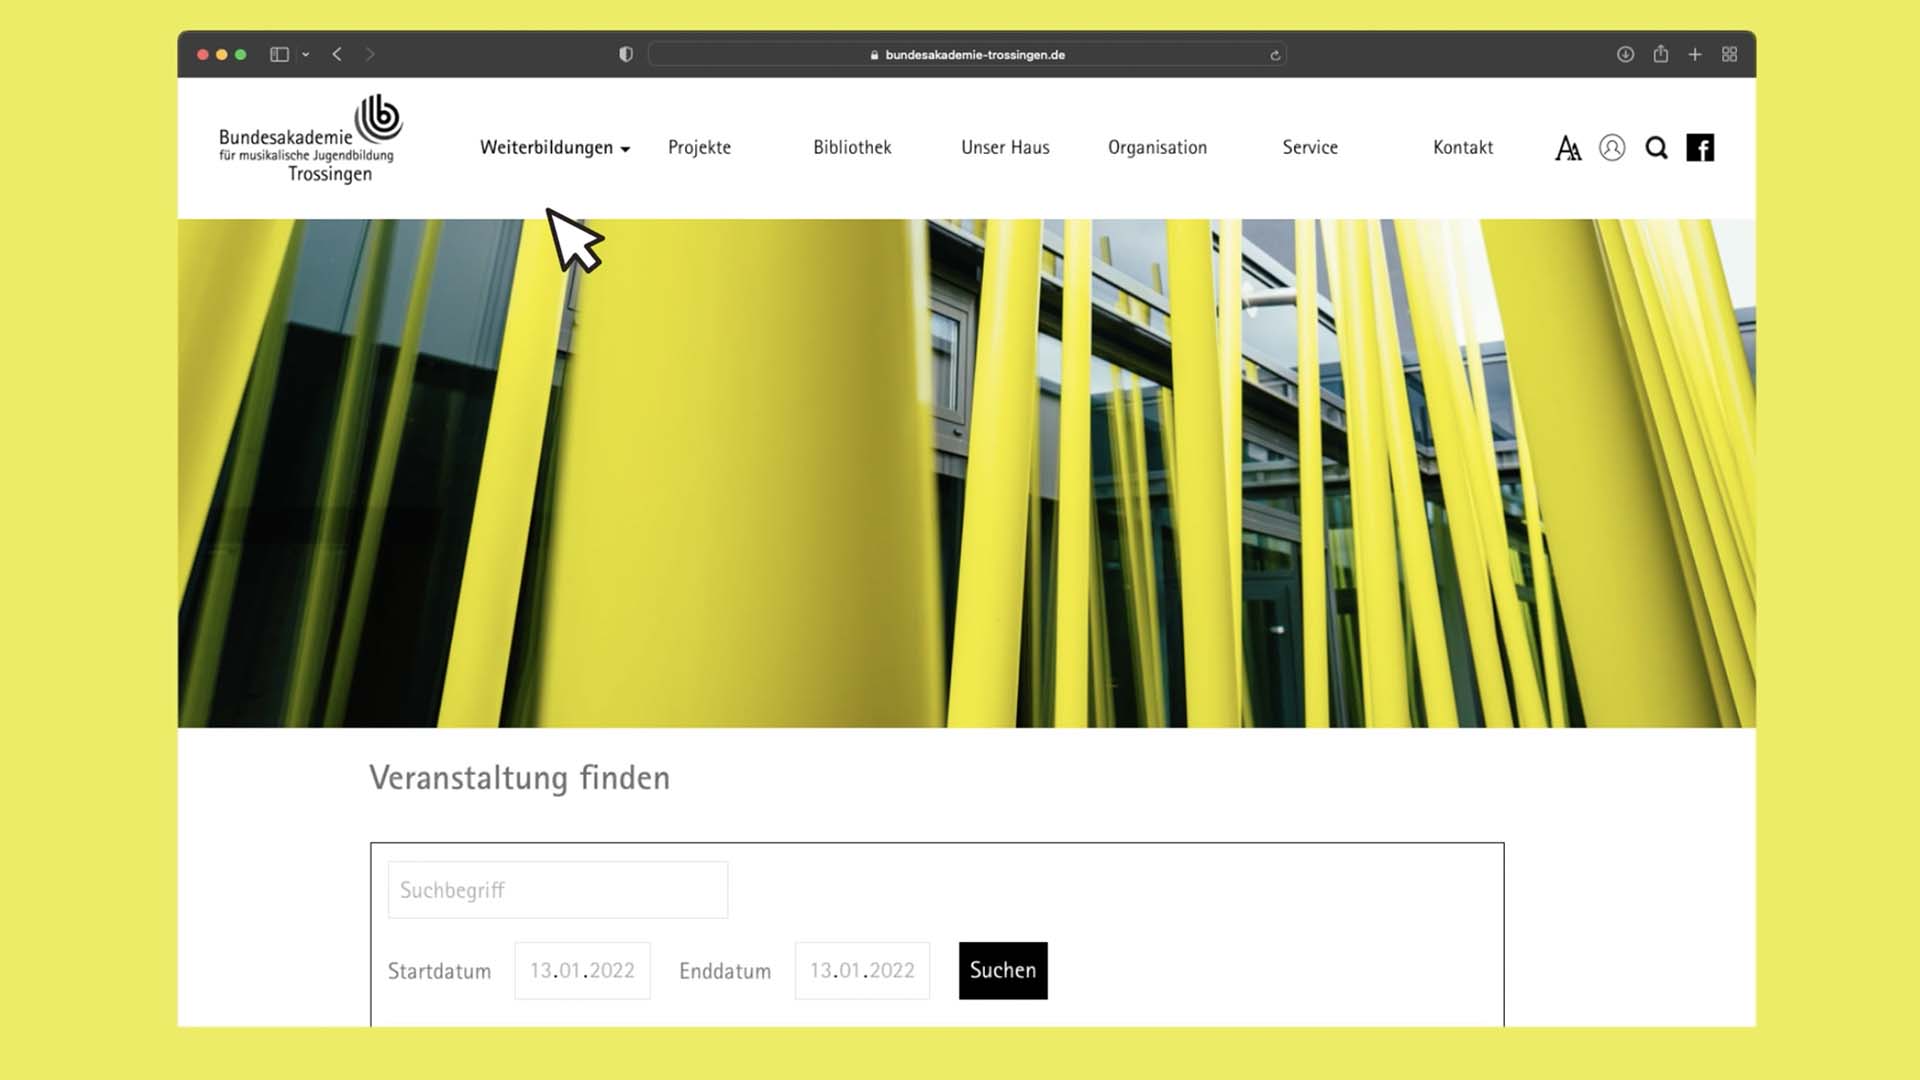 Website der Bundesakademie Trossingen, gestaltet und programmiert durch W52